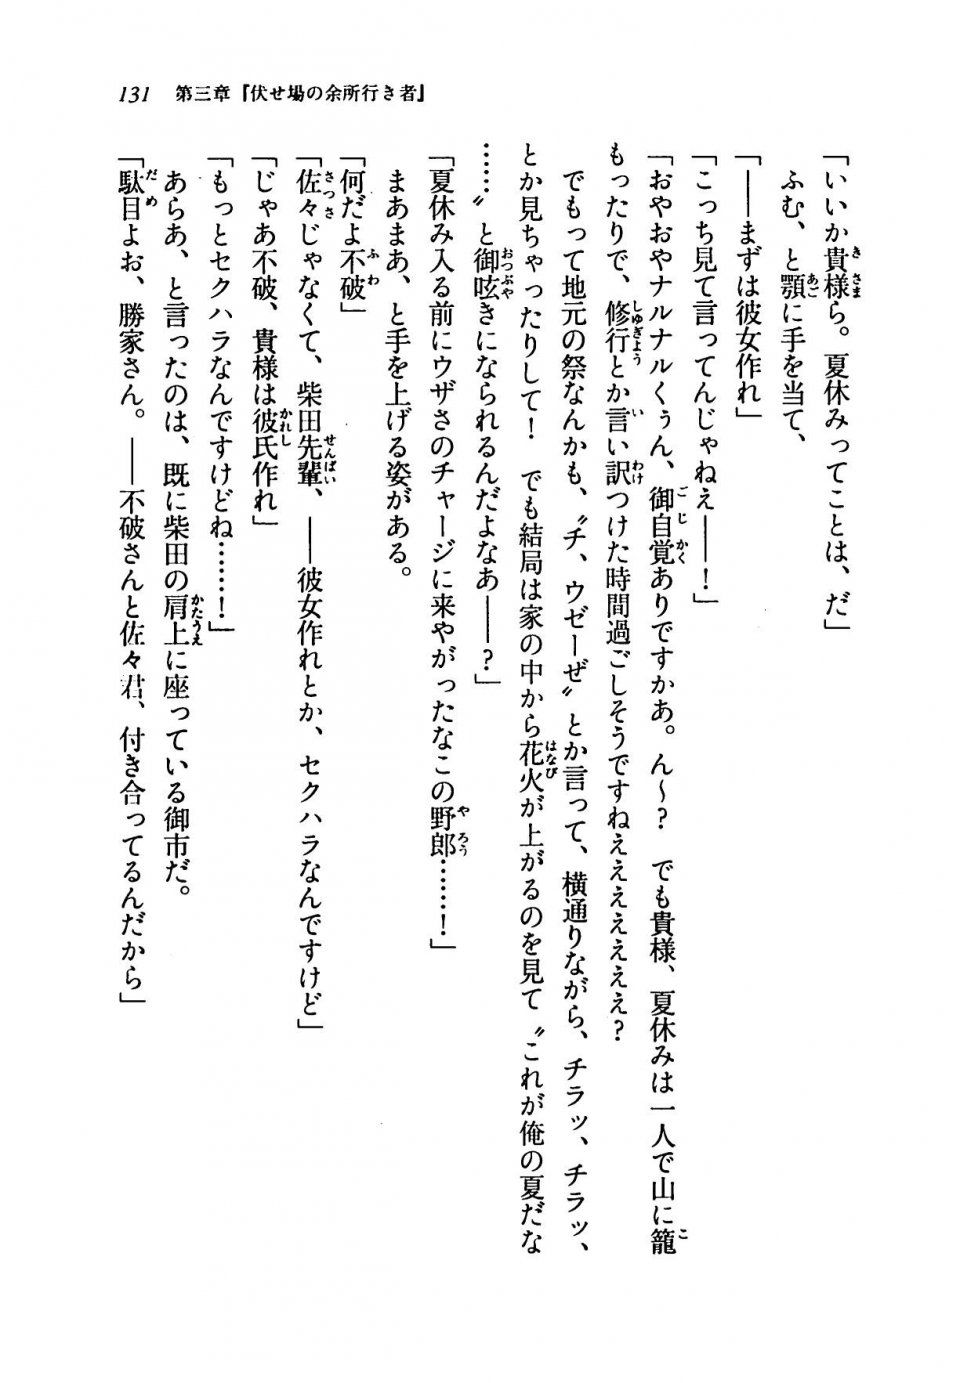 Kyoukai Senjou no Horizon LN Vol 19(8A) - Photo #131